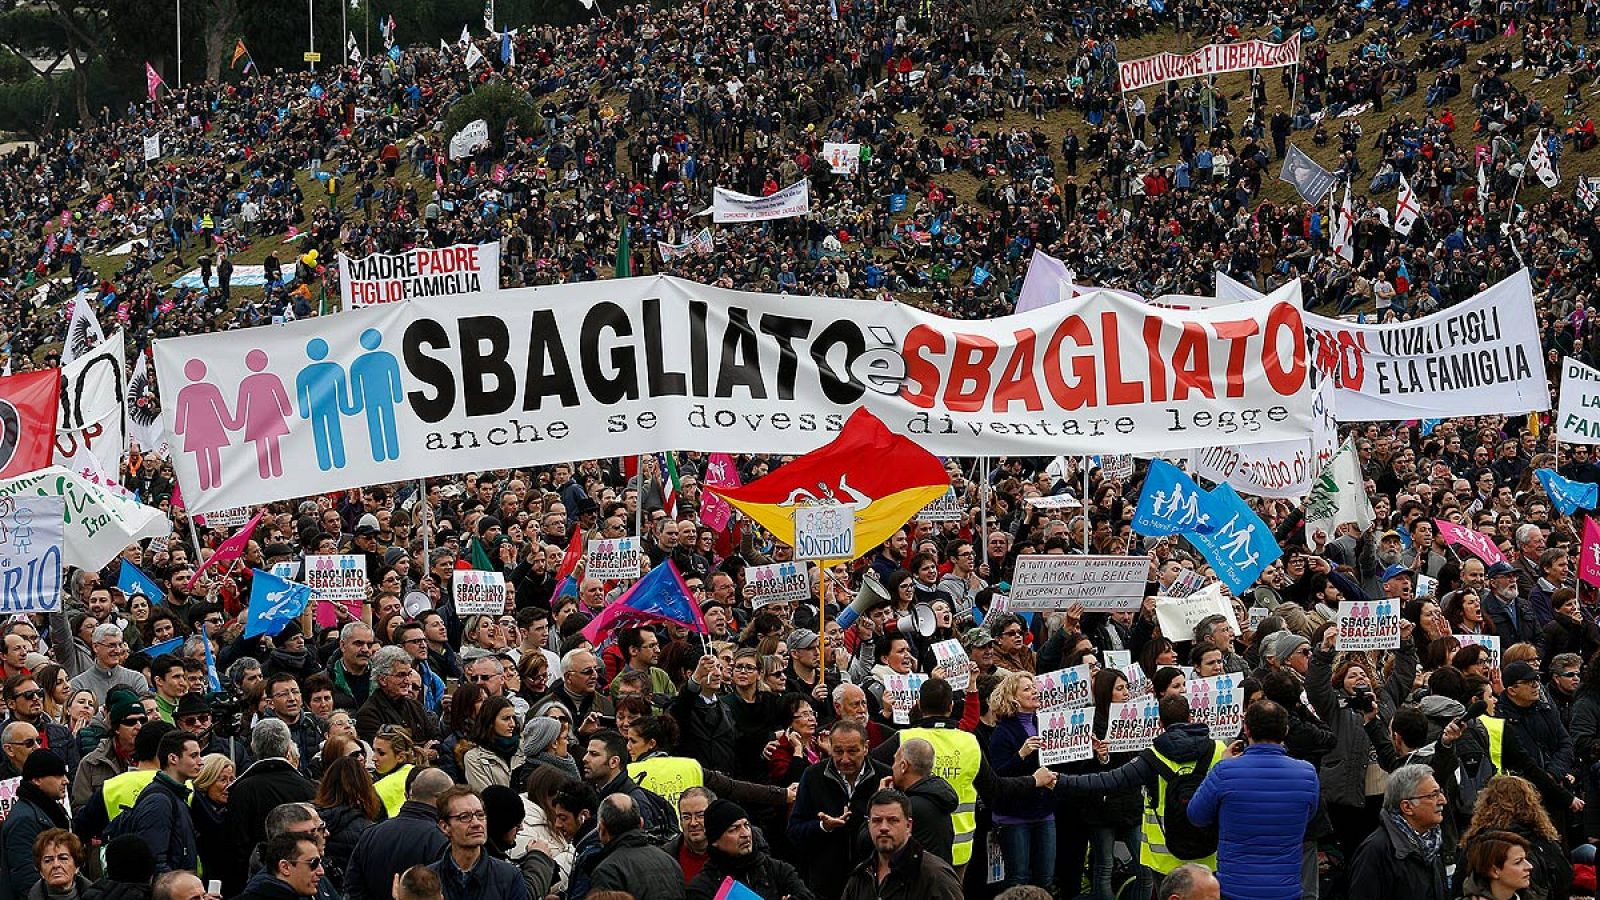 "Es un error incluso si se convierte en ley", reza la pancarta de los manifestantes contra las uniones gais en Roma.